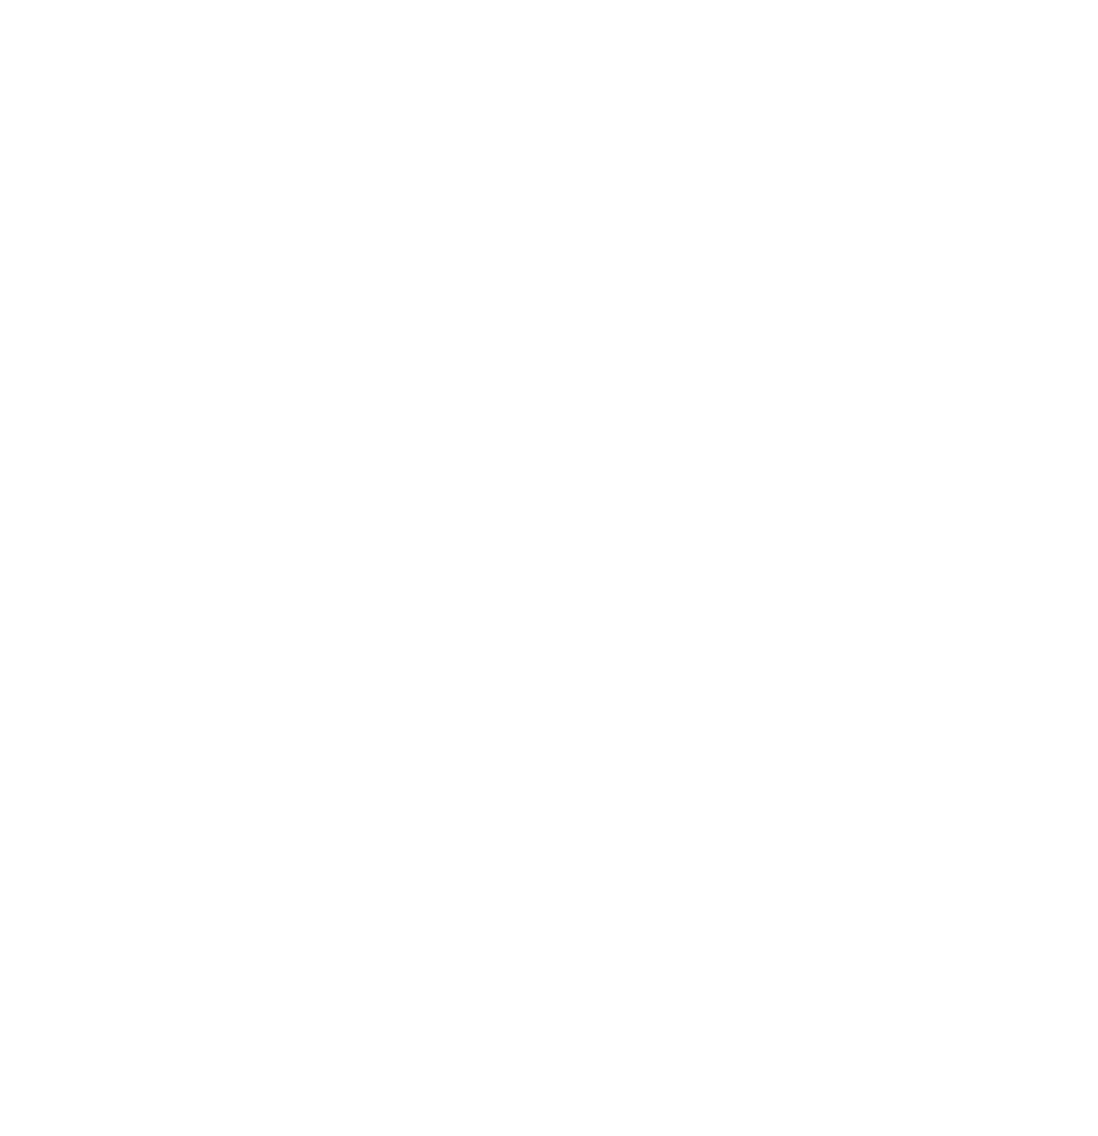 JolieDen Beauty Studio